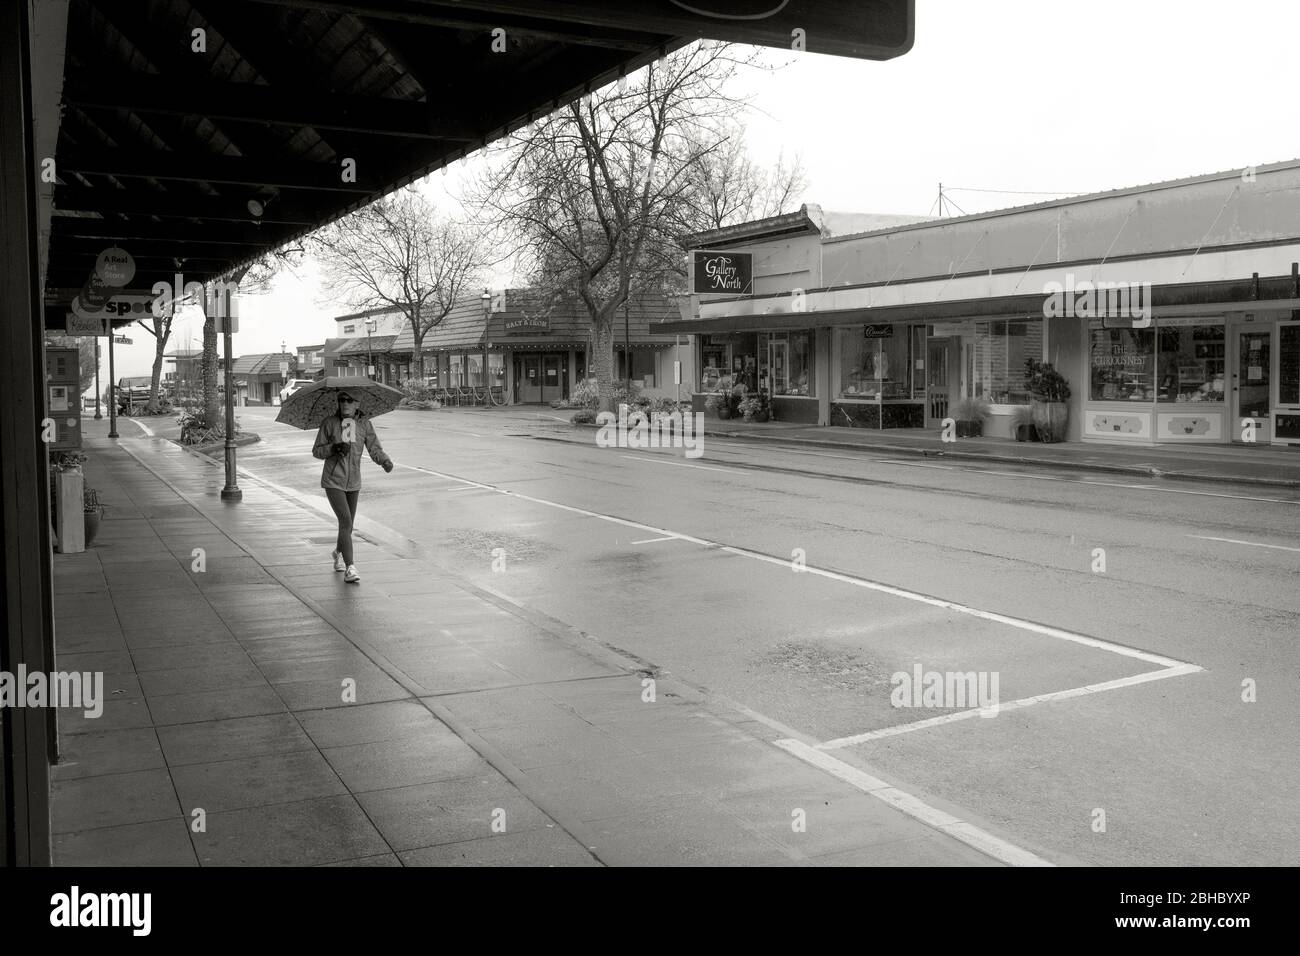 WA17459-00-BW....WASHINGTON - giorno delle piogge con strade vuote e negozi chiusi a Edmonds durante l'epidemia di COVID 19 del 2020. Foto Stock